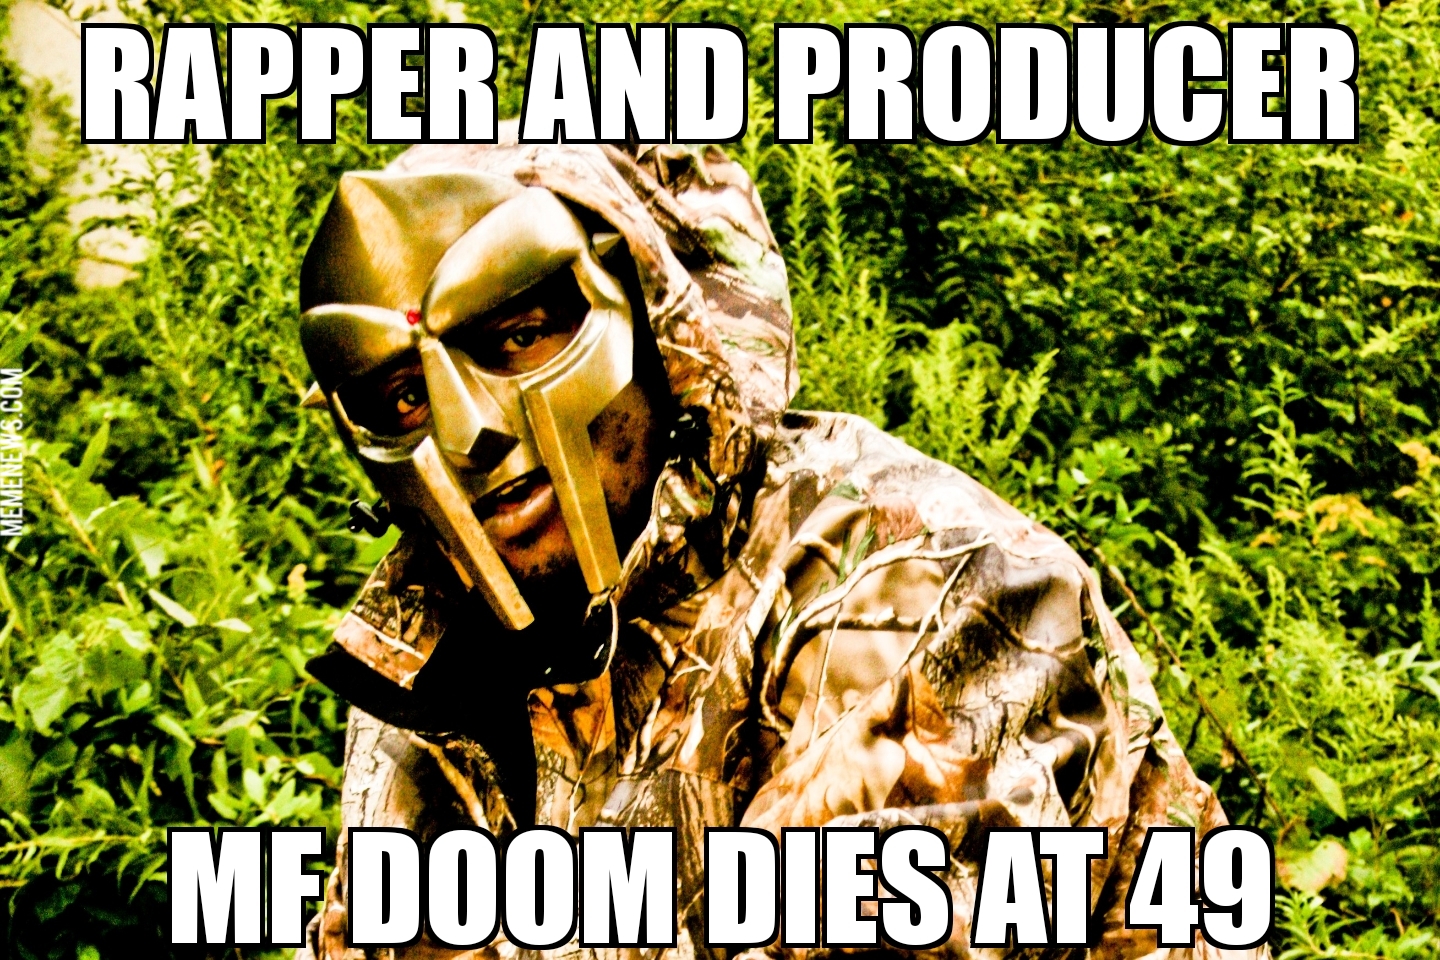 MF Doom dies